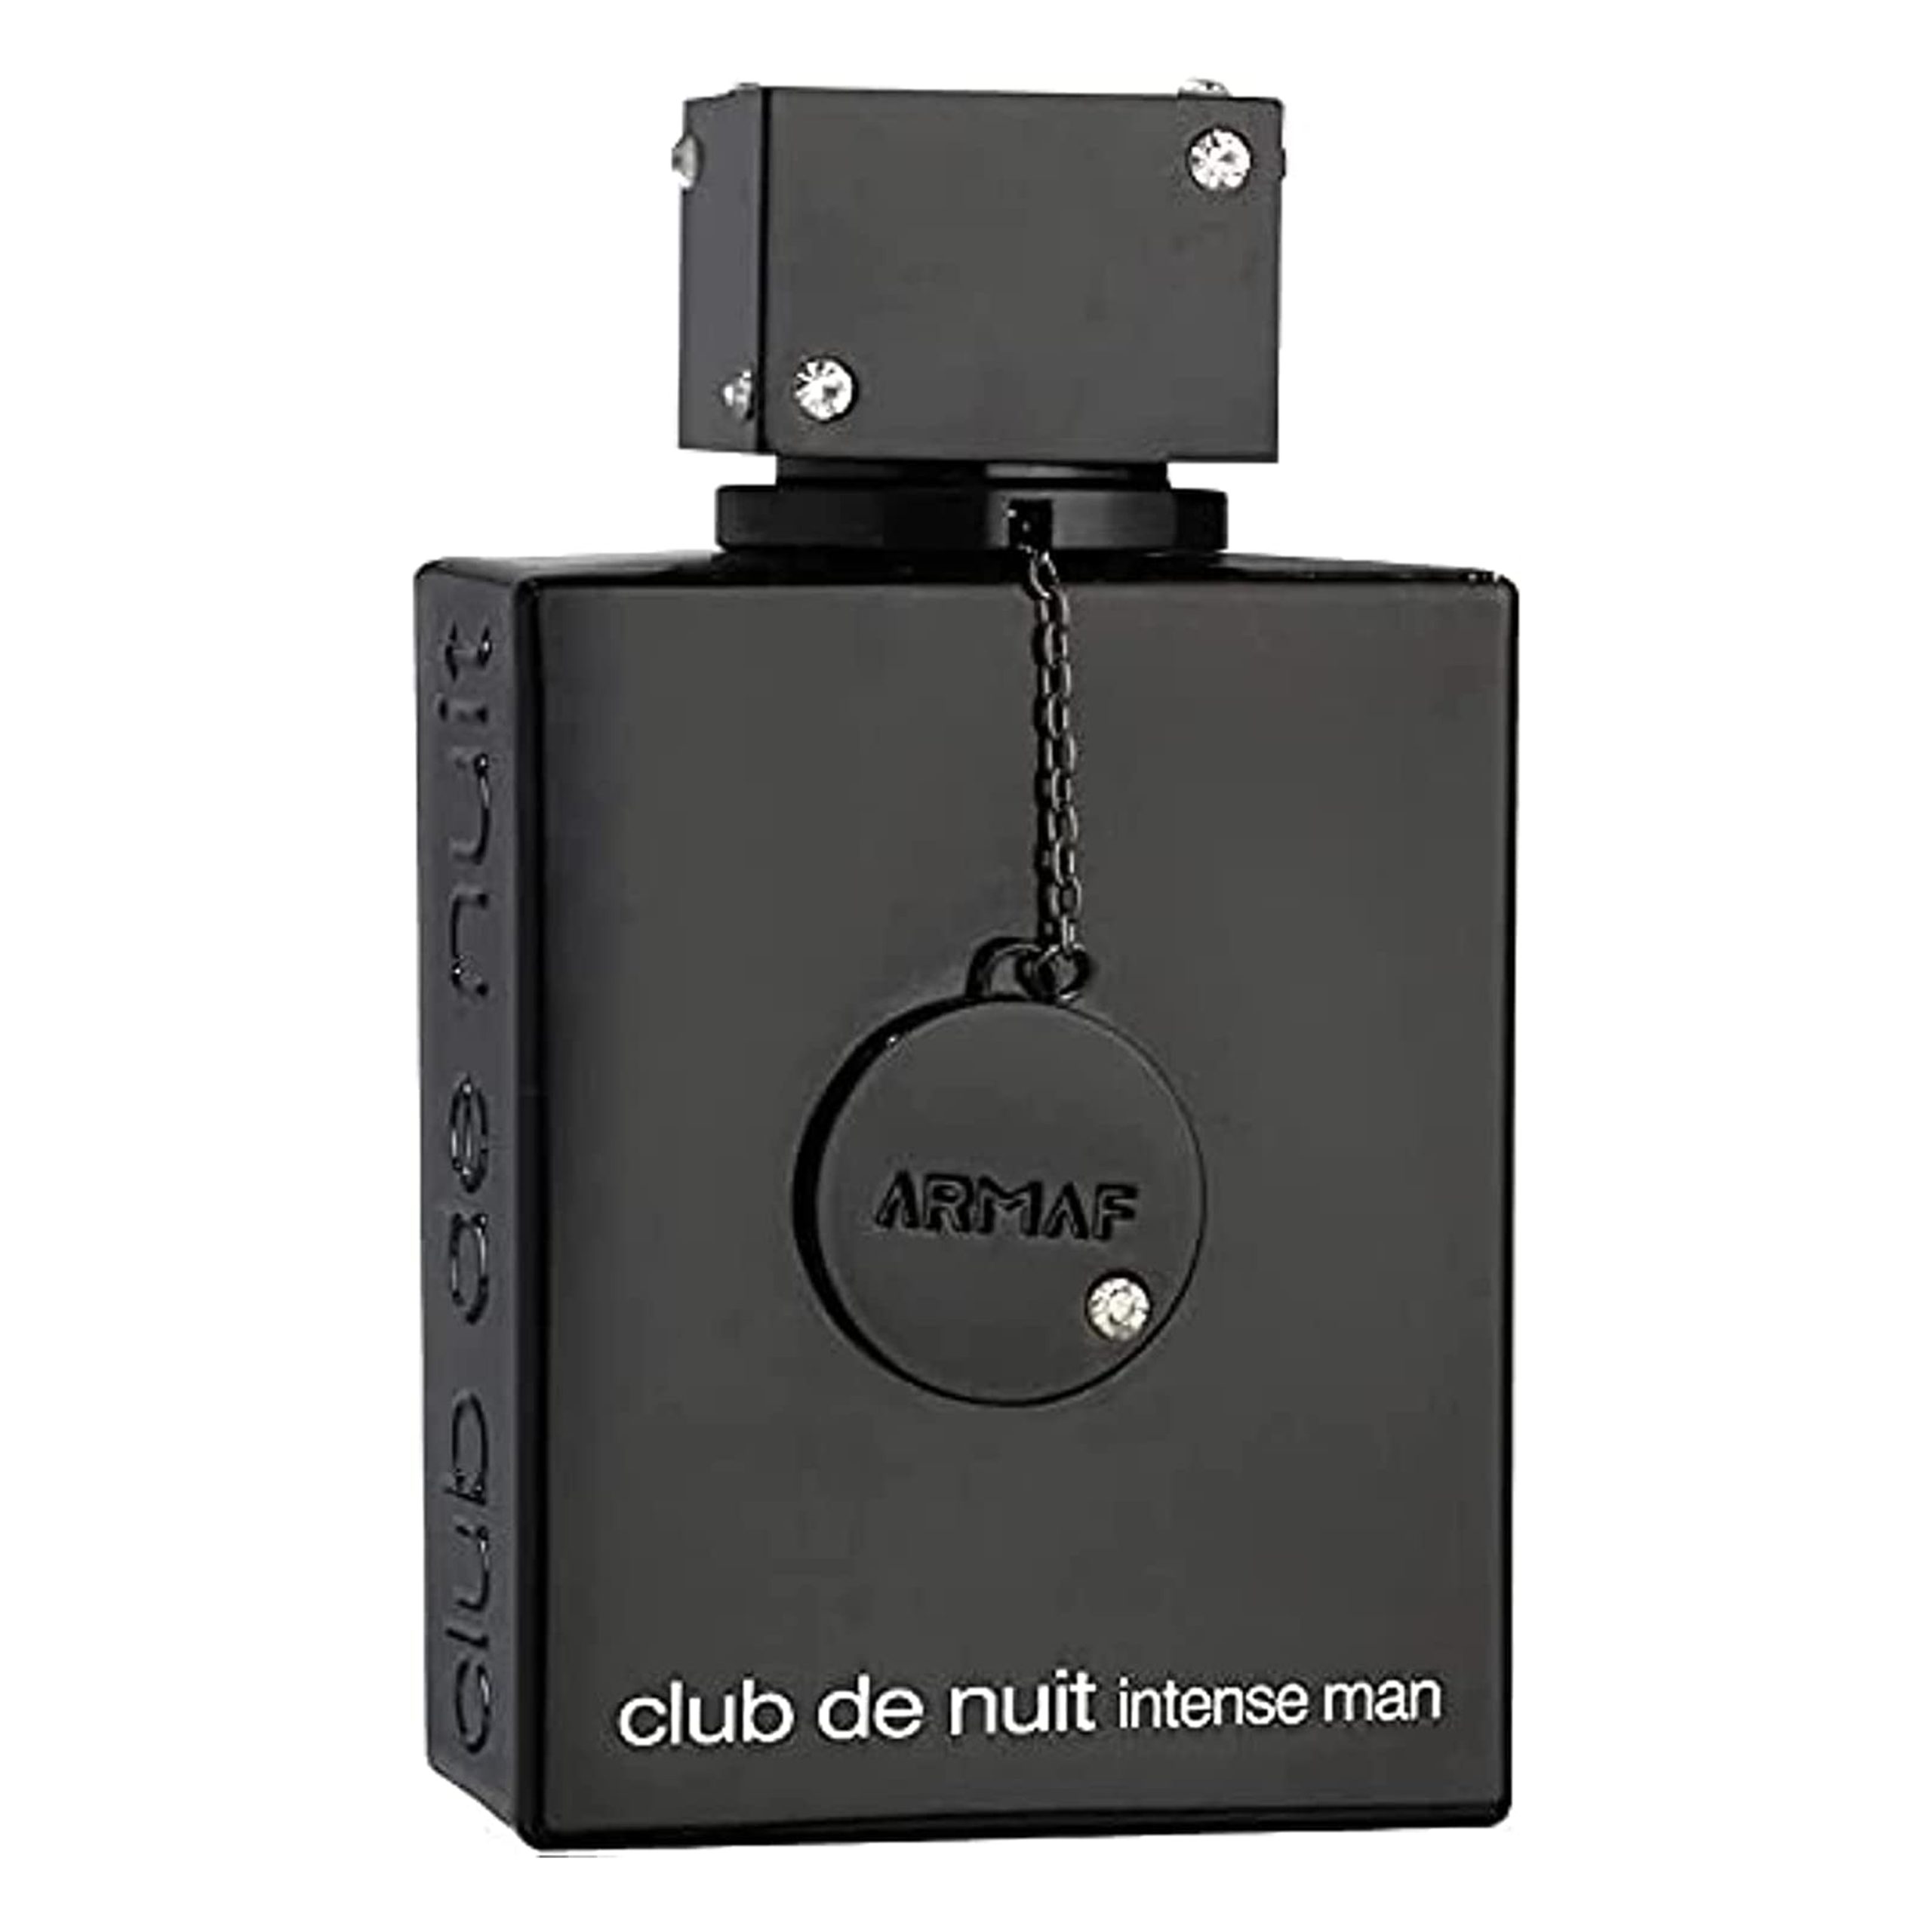 ادکلن مردانه آرماف کلاب د نویت اینتنس Armaf Perfume Club de Nuit Intense Man Perfume